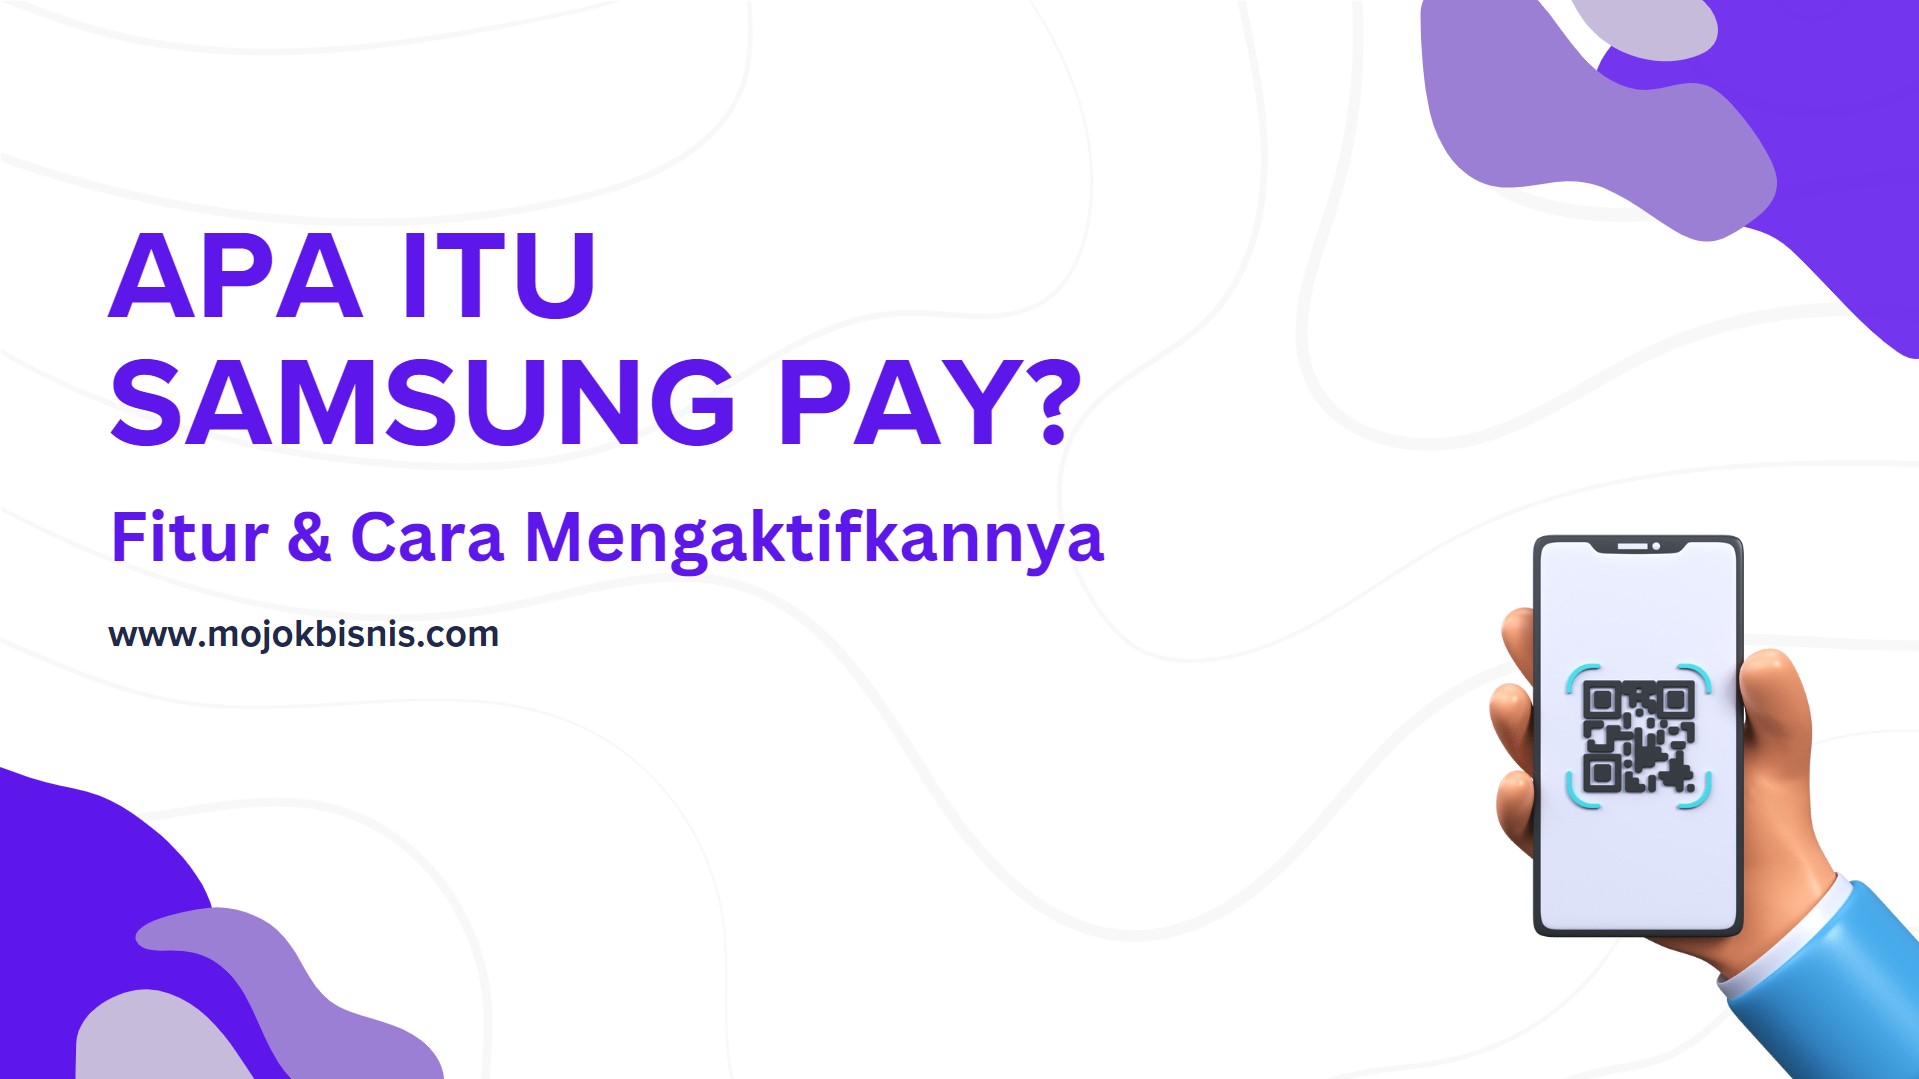 Apa itu Samsung Pay Fitur dan Cara Mengaktifkannya